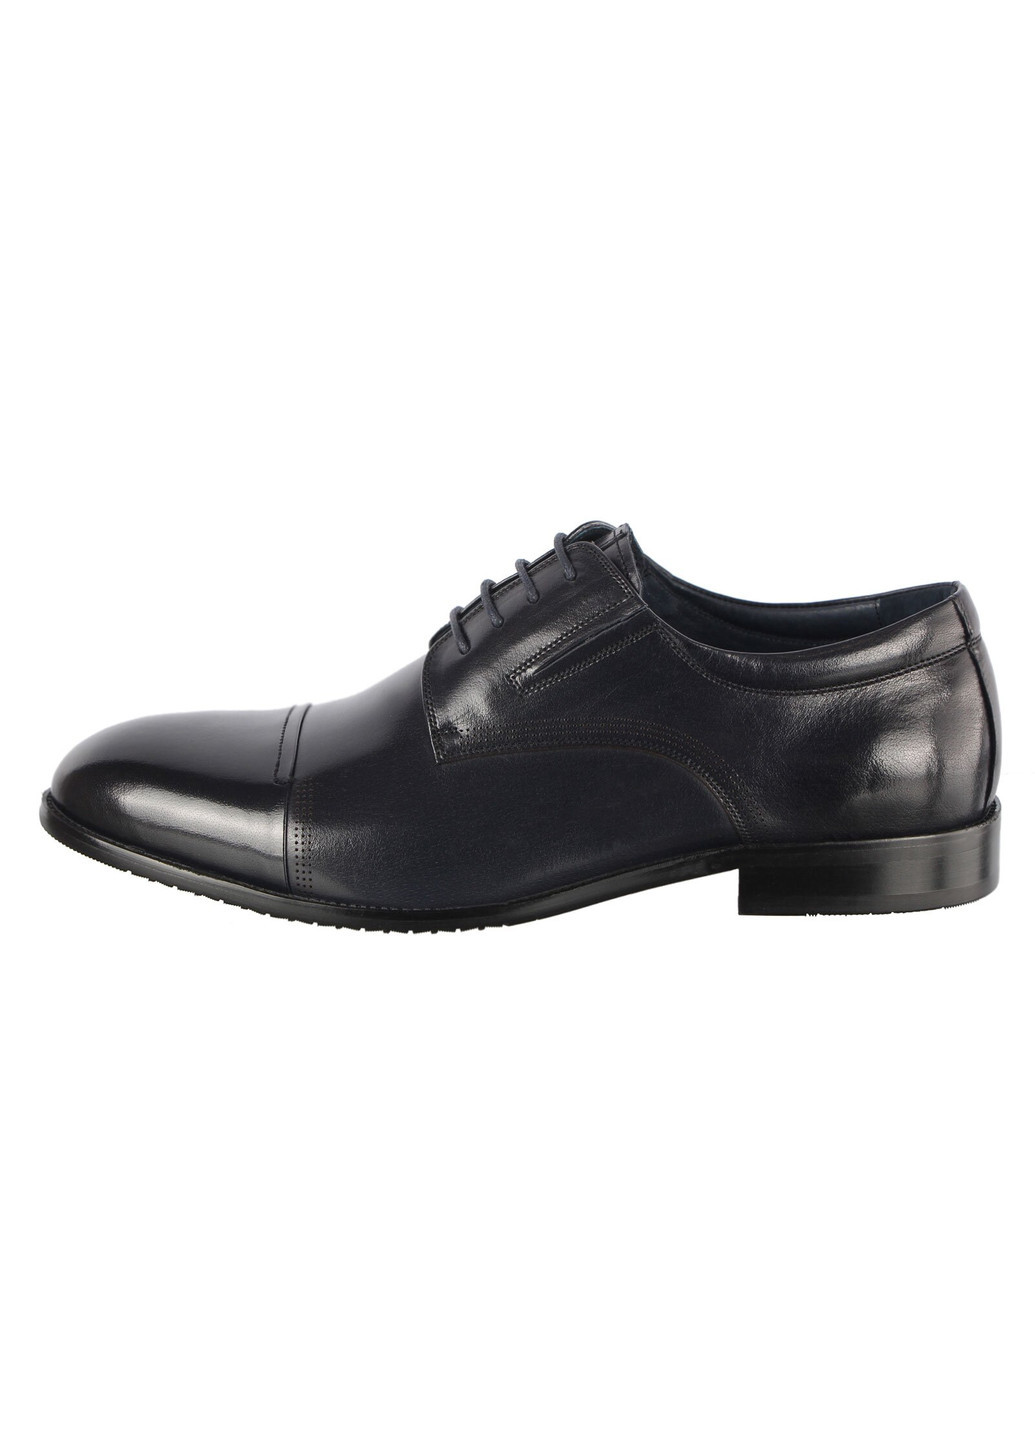 Черные мужские классические туфли 196352 Cosottinni на шнурках